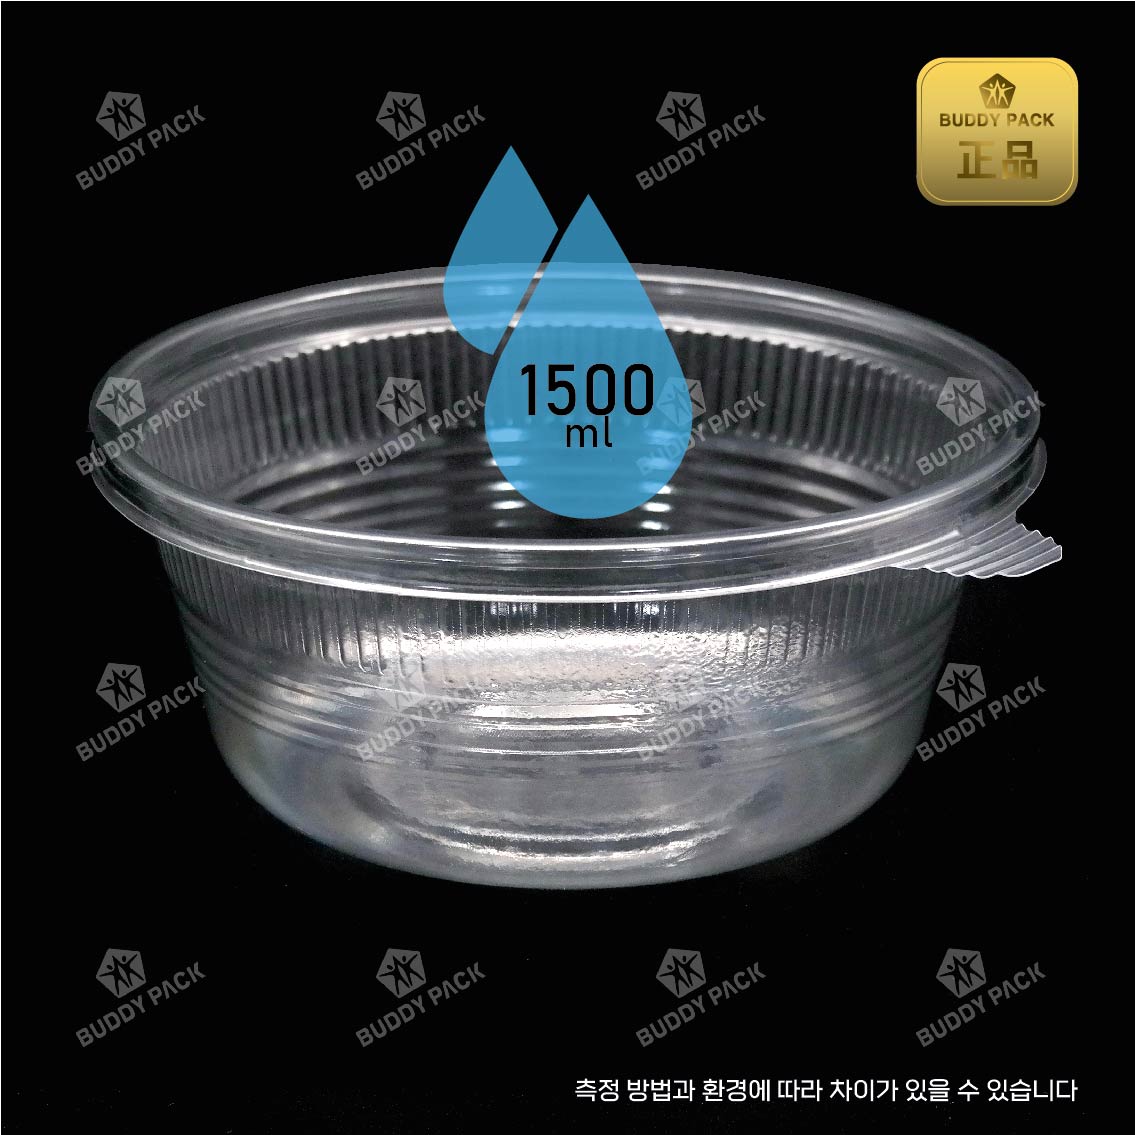 버디팩 비빔밥 냉면용기 MT-200B 투명300개